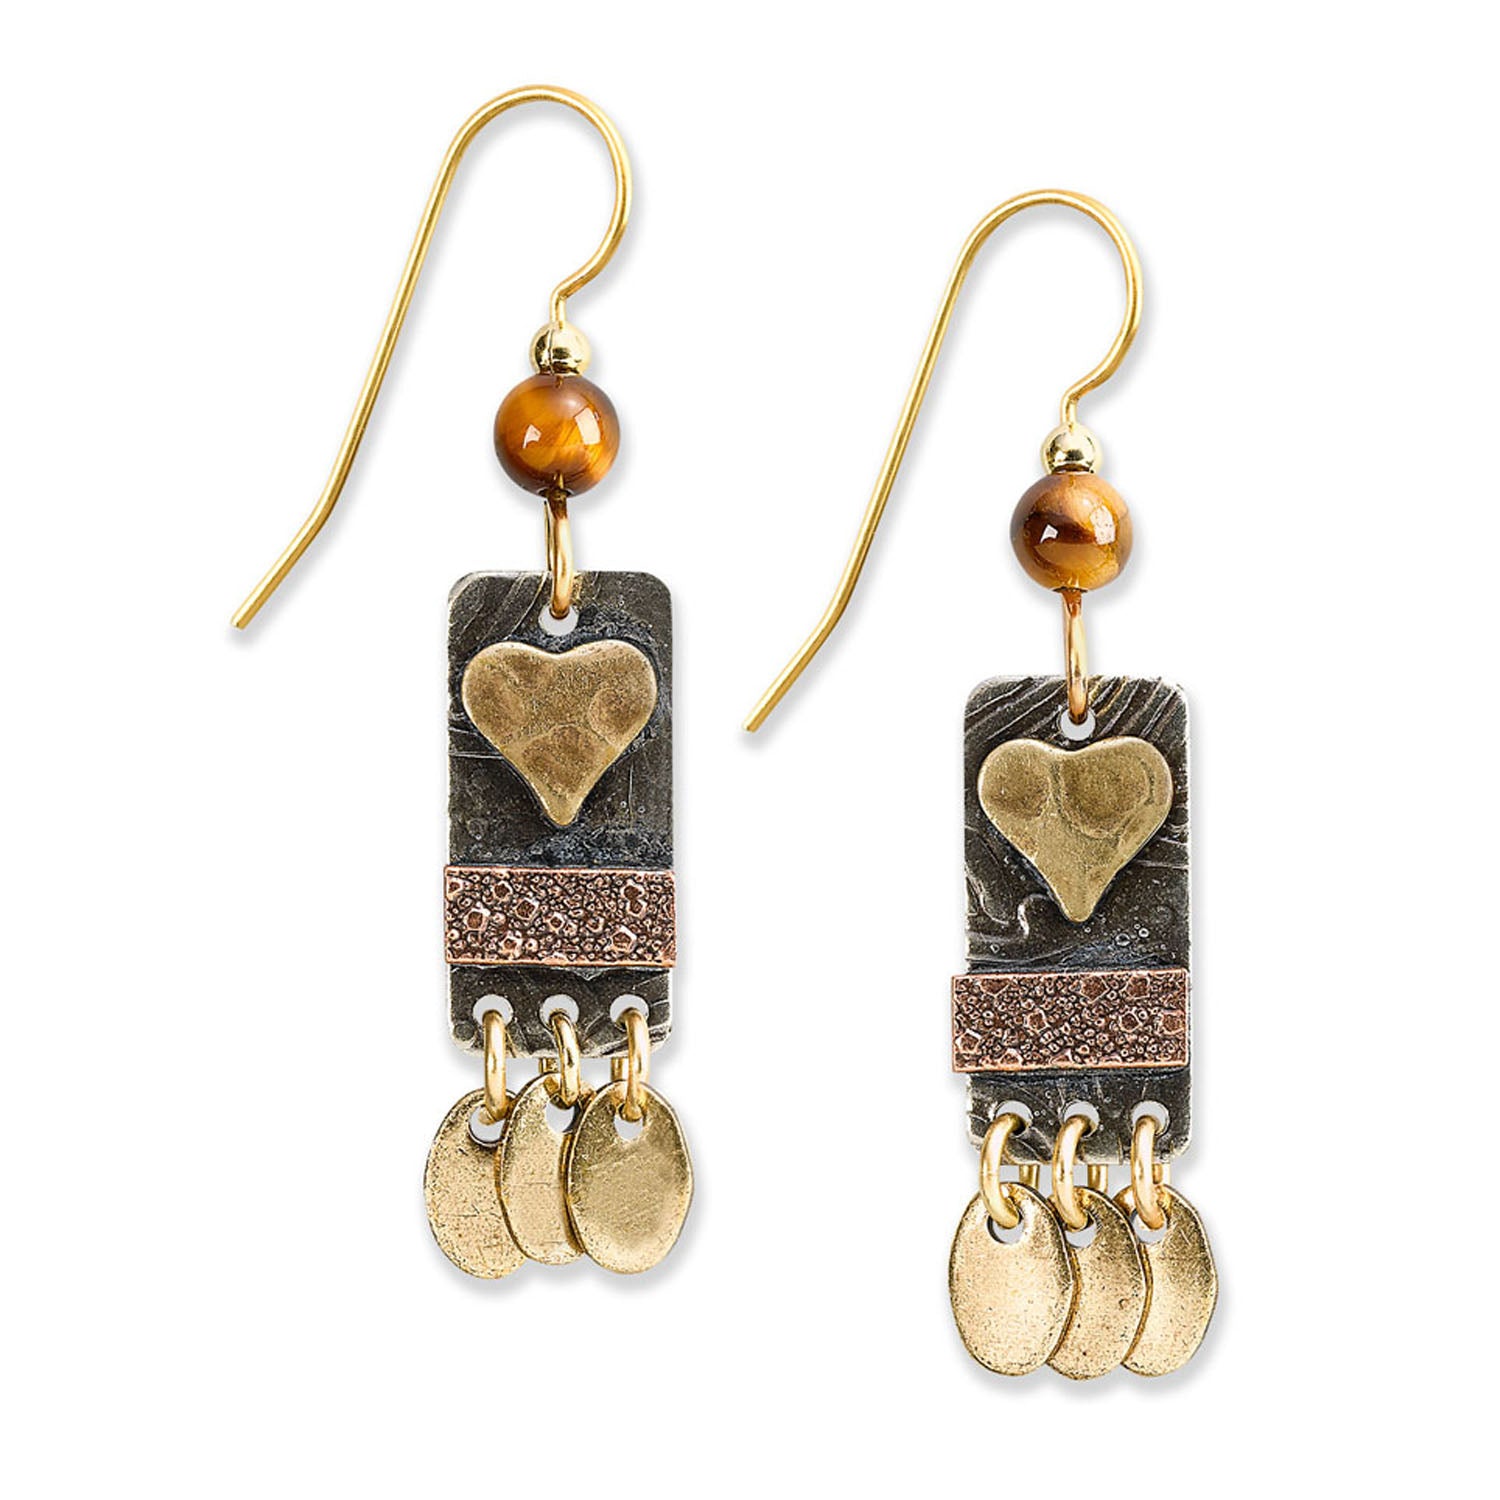 Silver Forest Heart Earrings